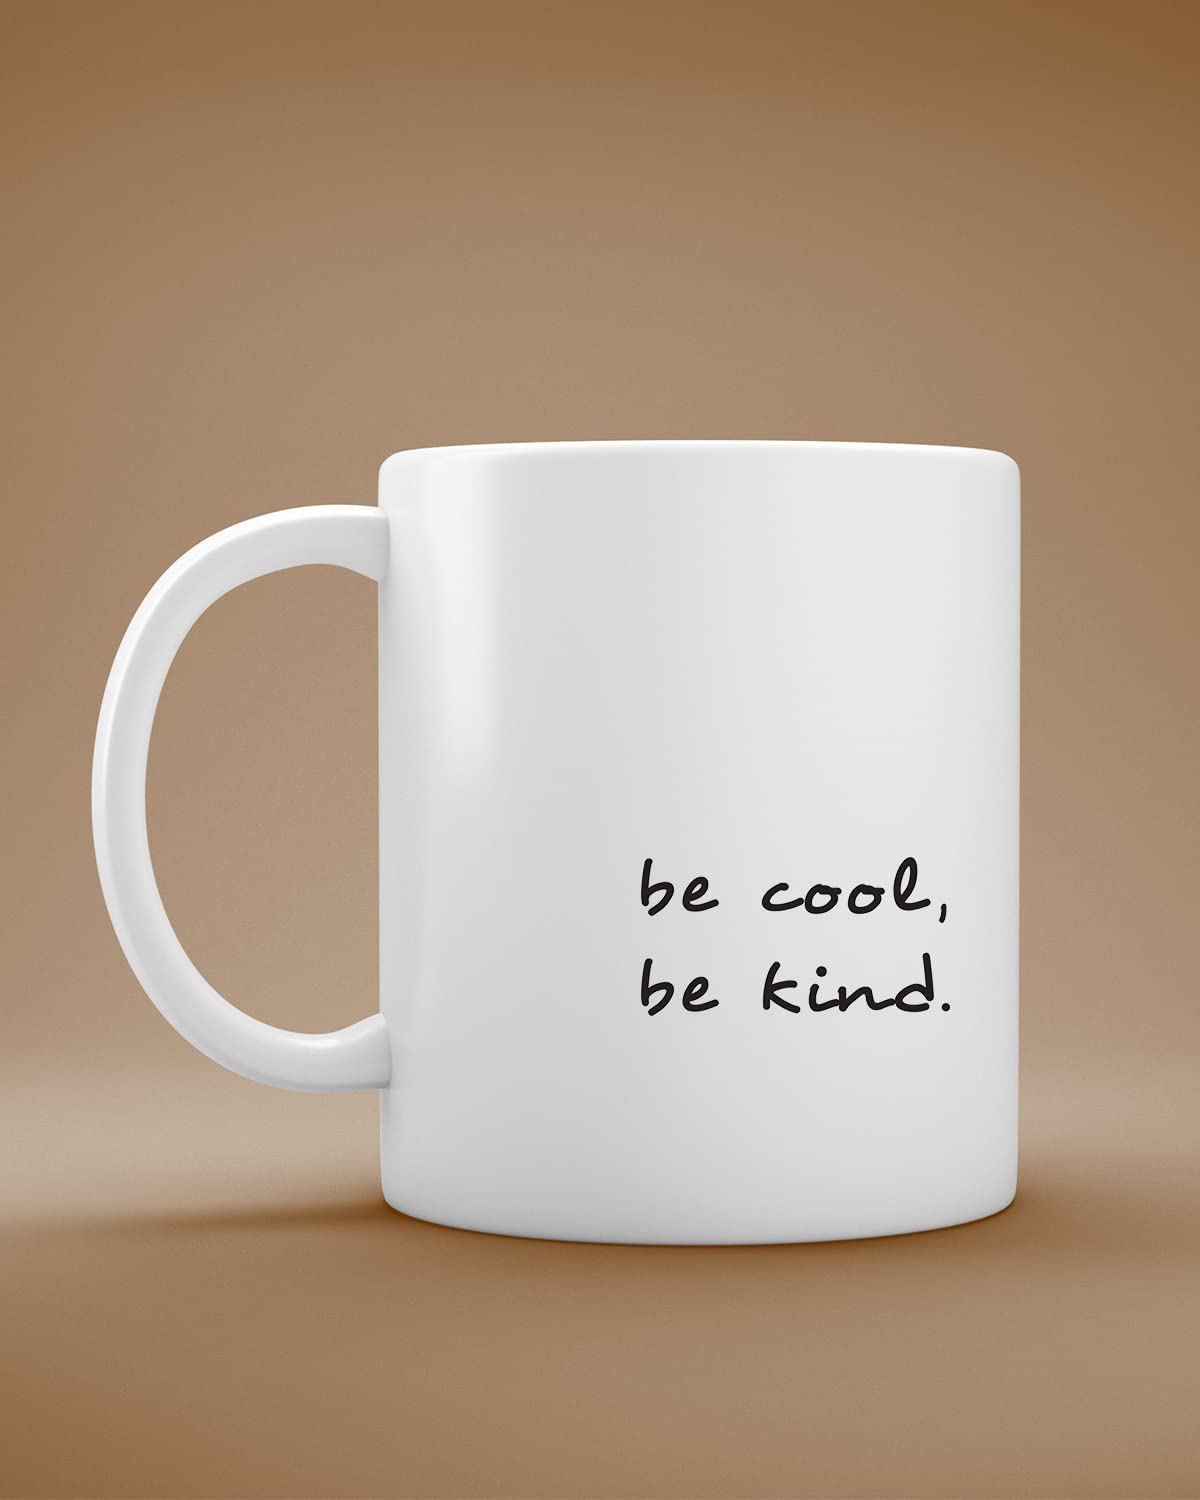 Be Cool Mug - Inspirational Gift